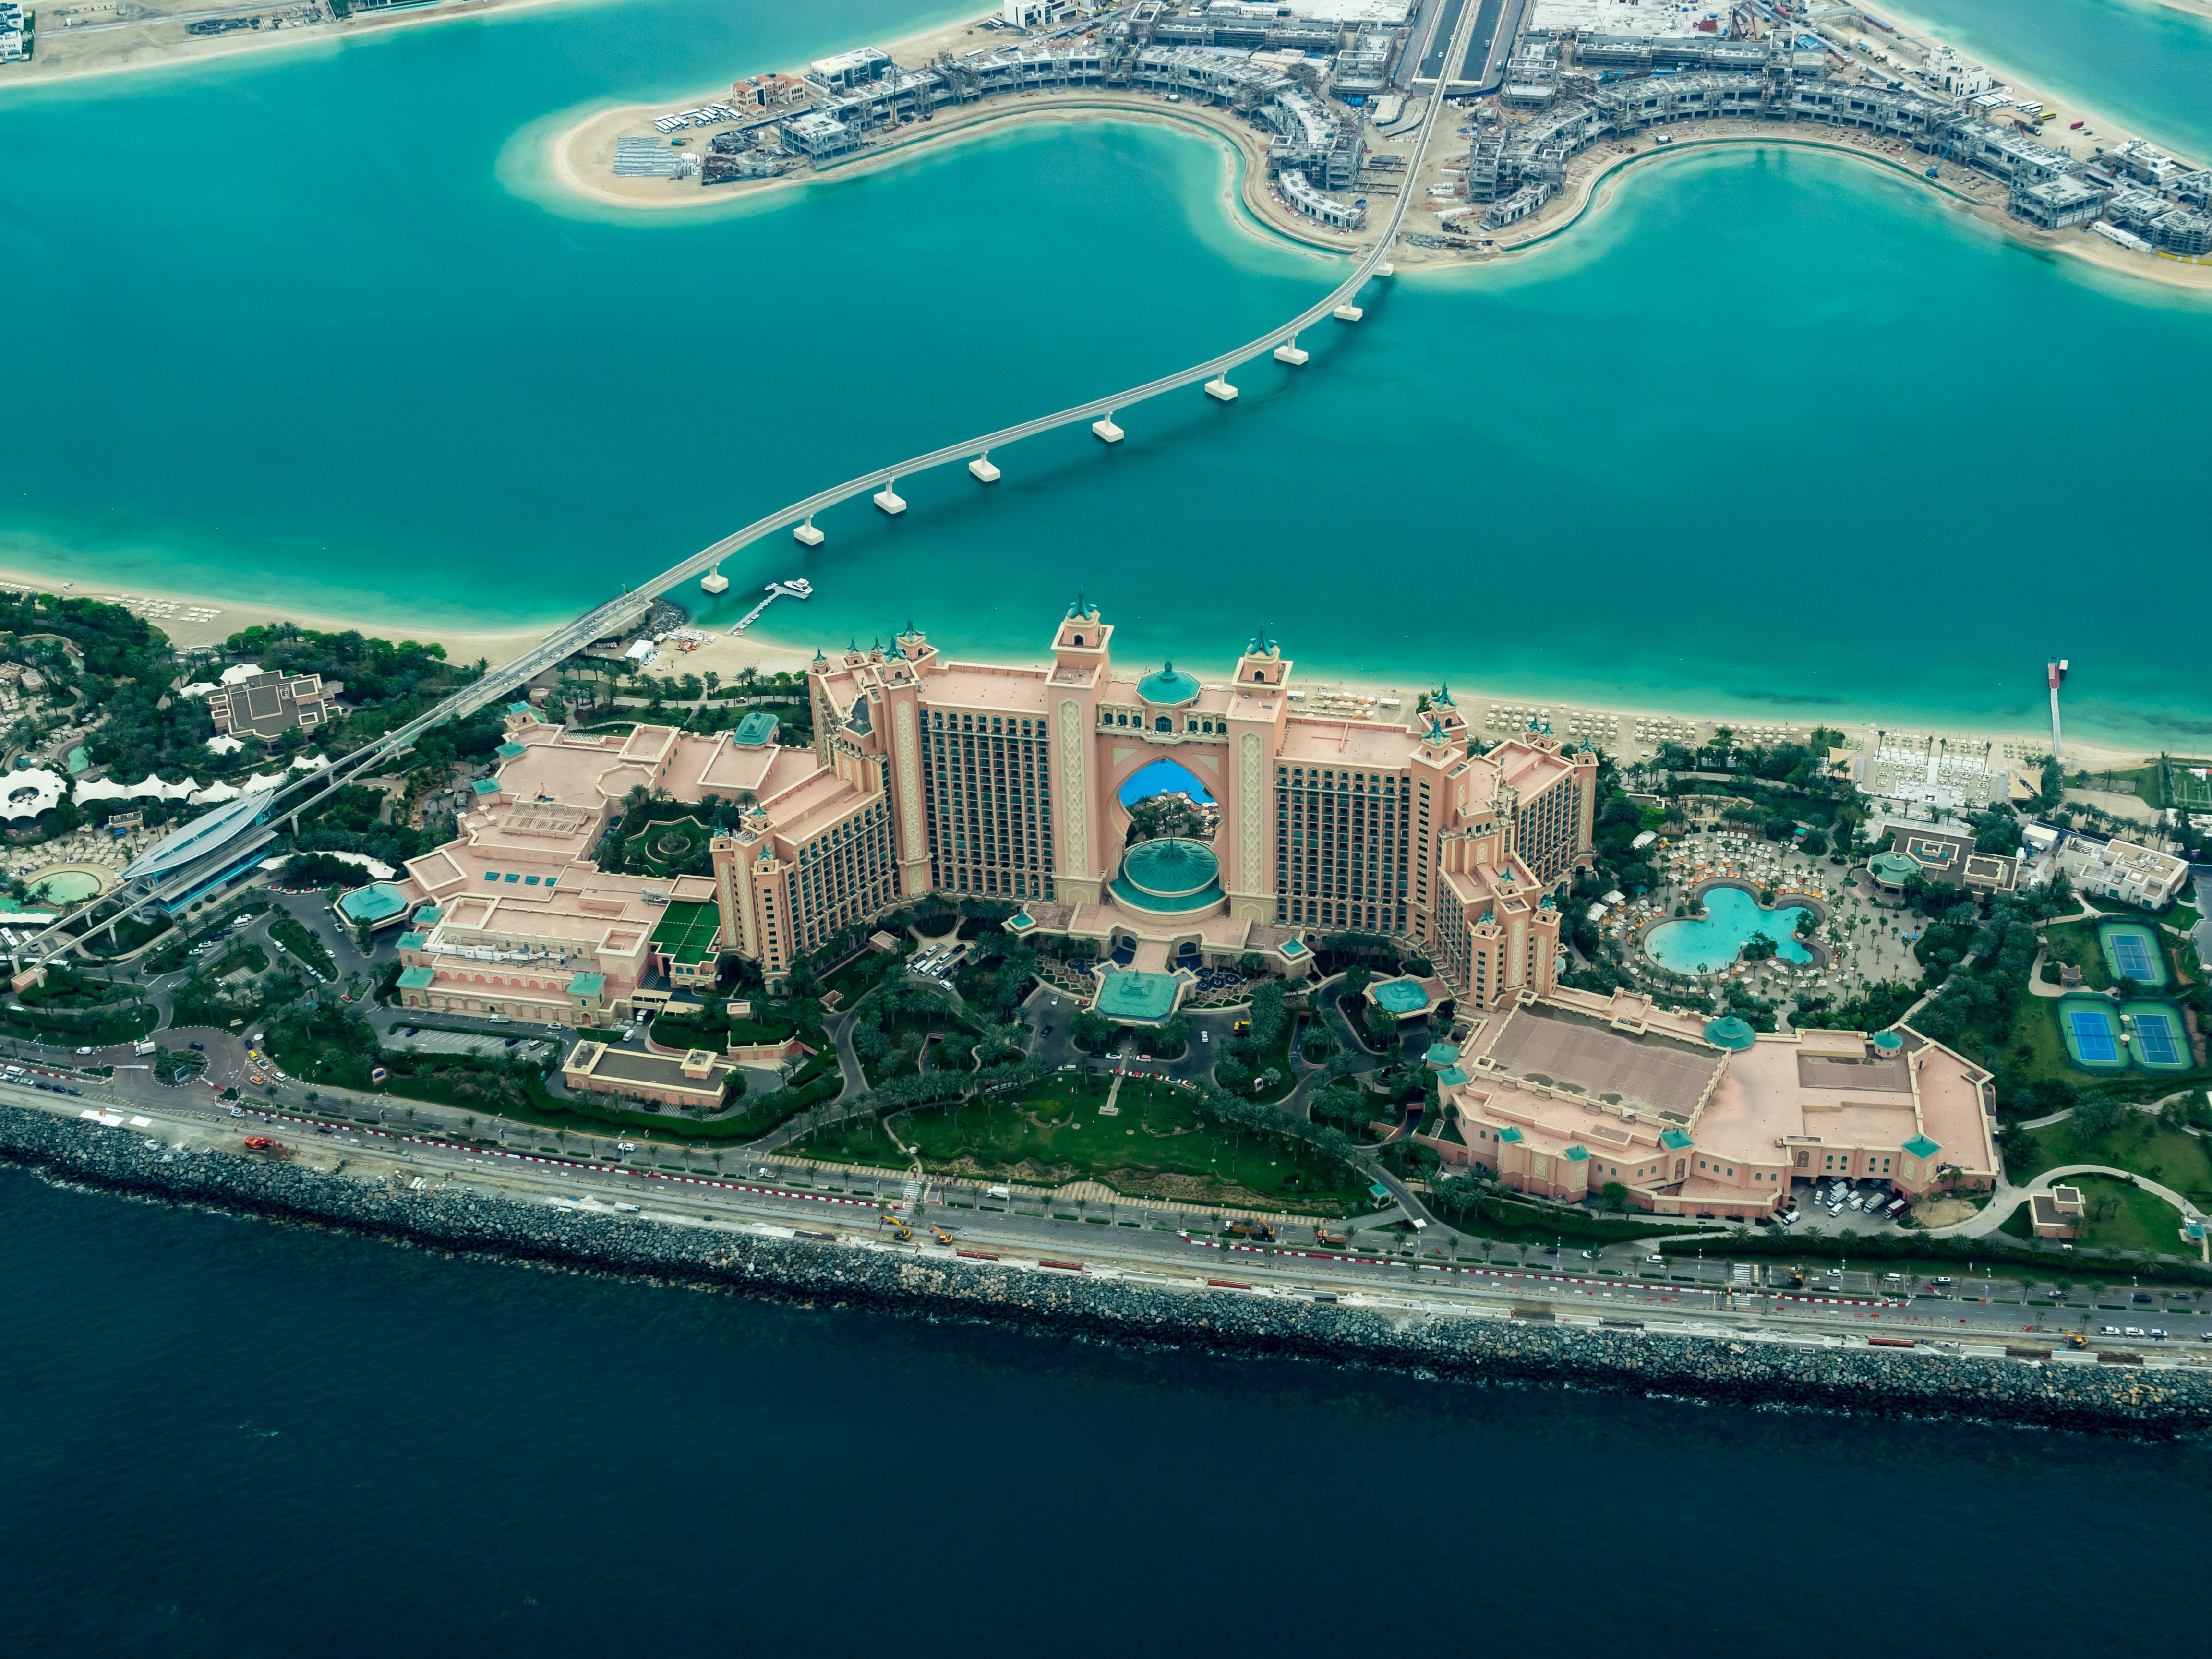 Jumeirah Beach aerial view
